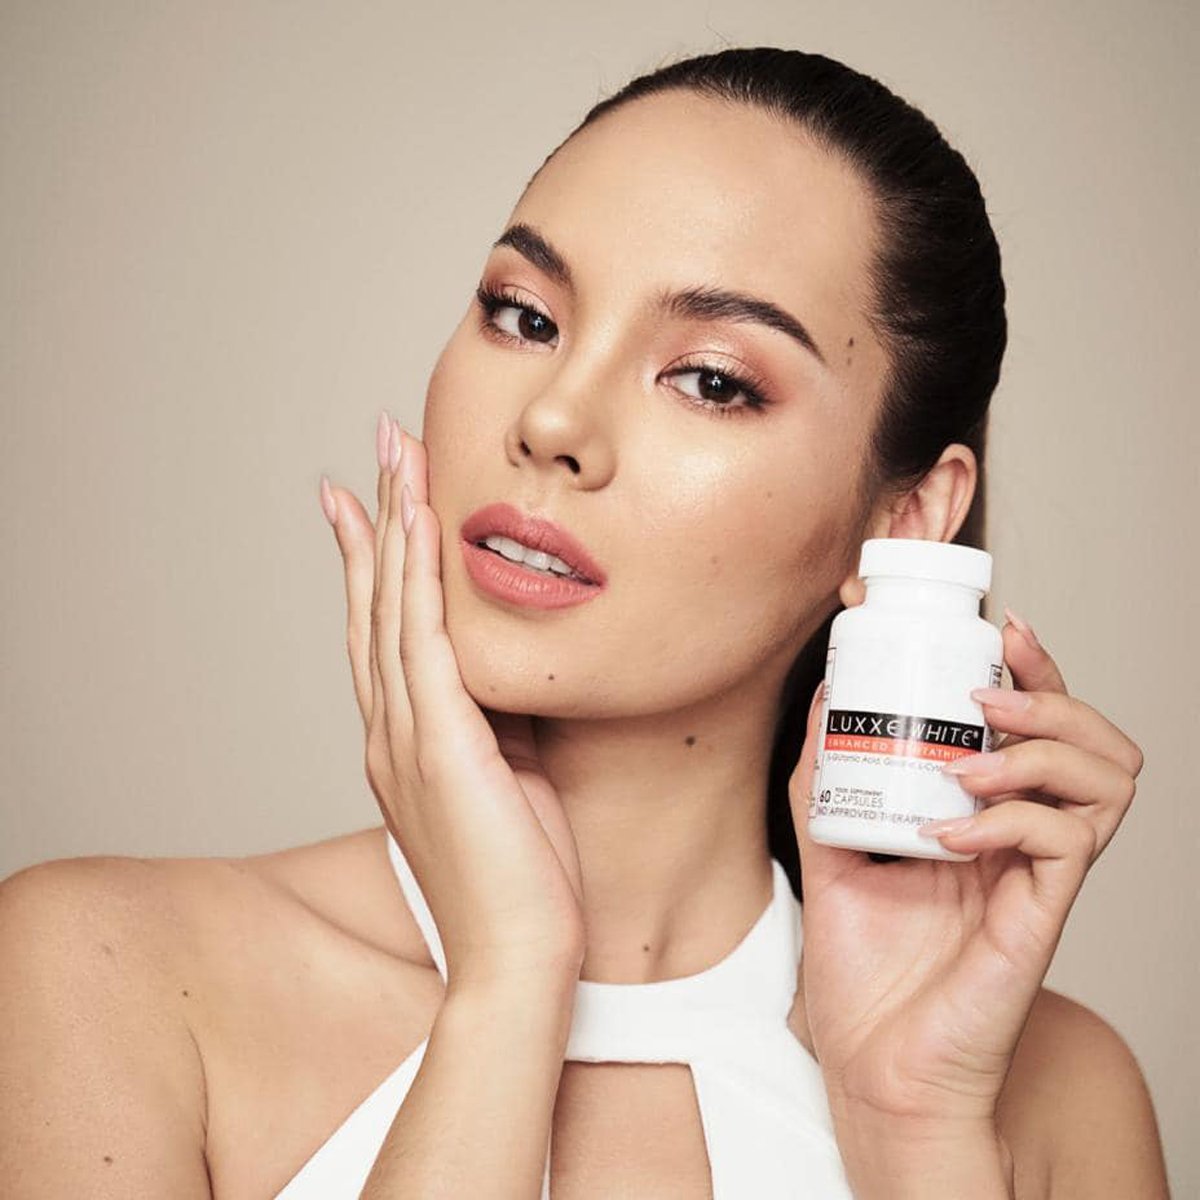 Luxxe White Enhanced Glutathione Skin Whitening Supplement 60 